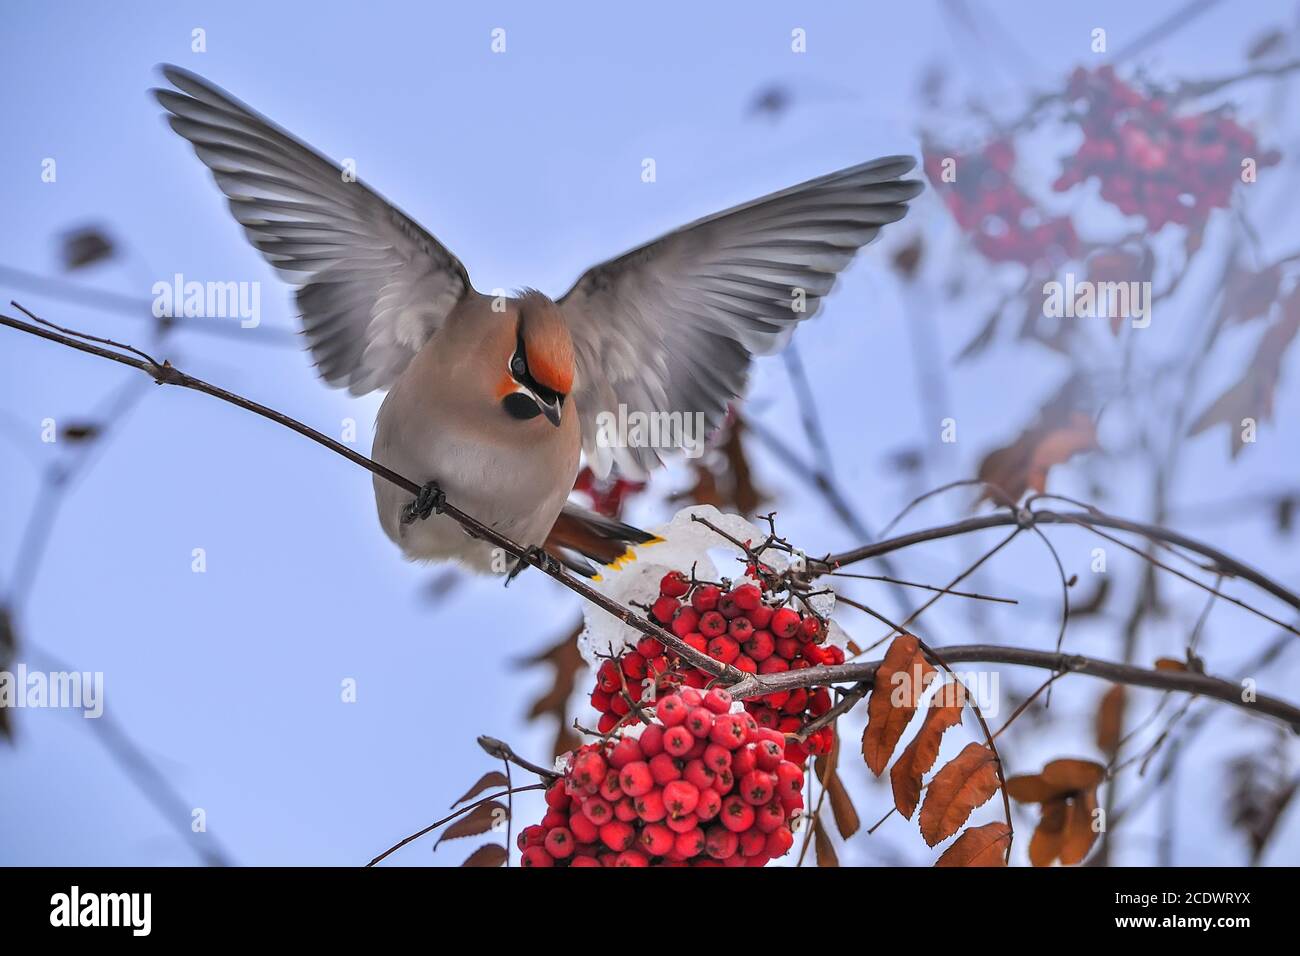 Alas de pájaro (Bombycilla garrulus) alimentándose en el árbol de rowan con bayas rojas Foto de stock